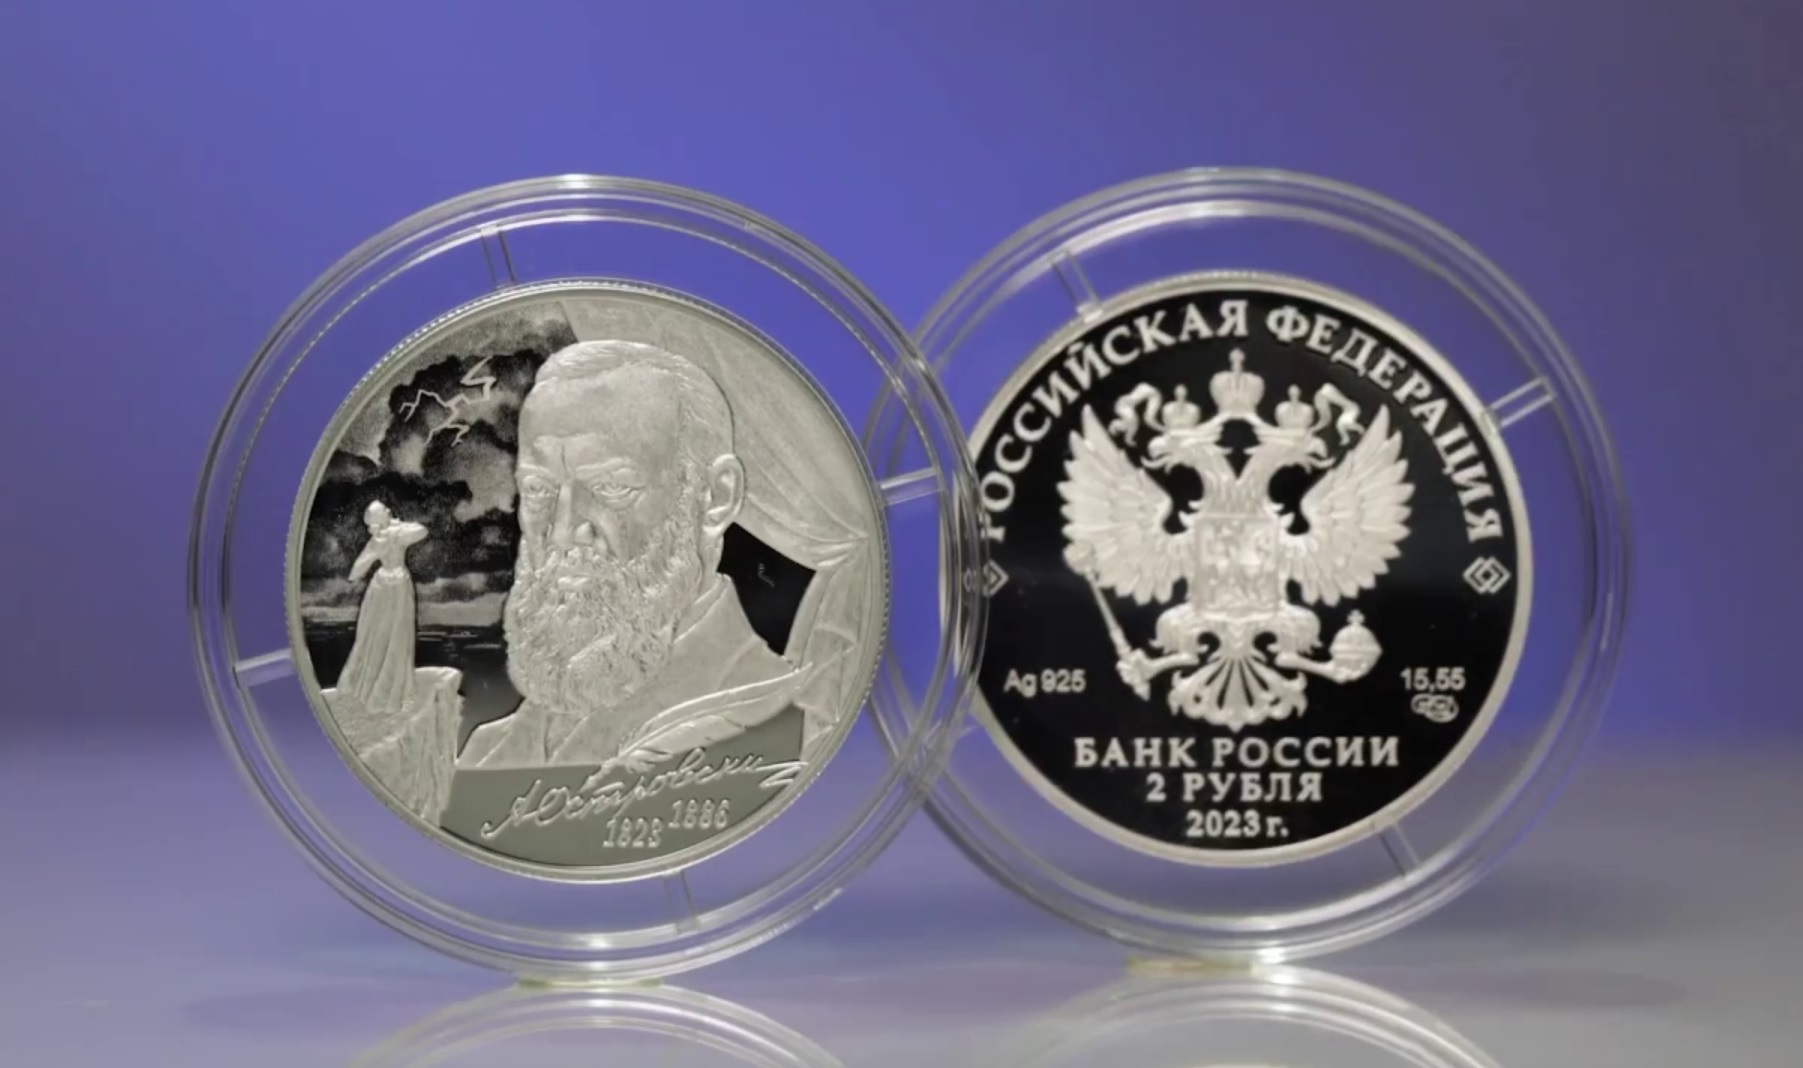 Памятные монеты, посвященные Островскому и Пришвину, выпустили в России в январе-феврале 2023 года